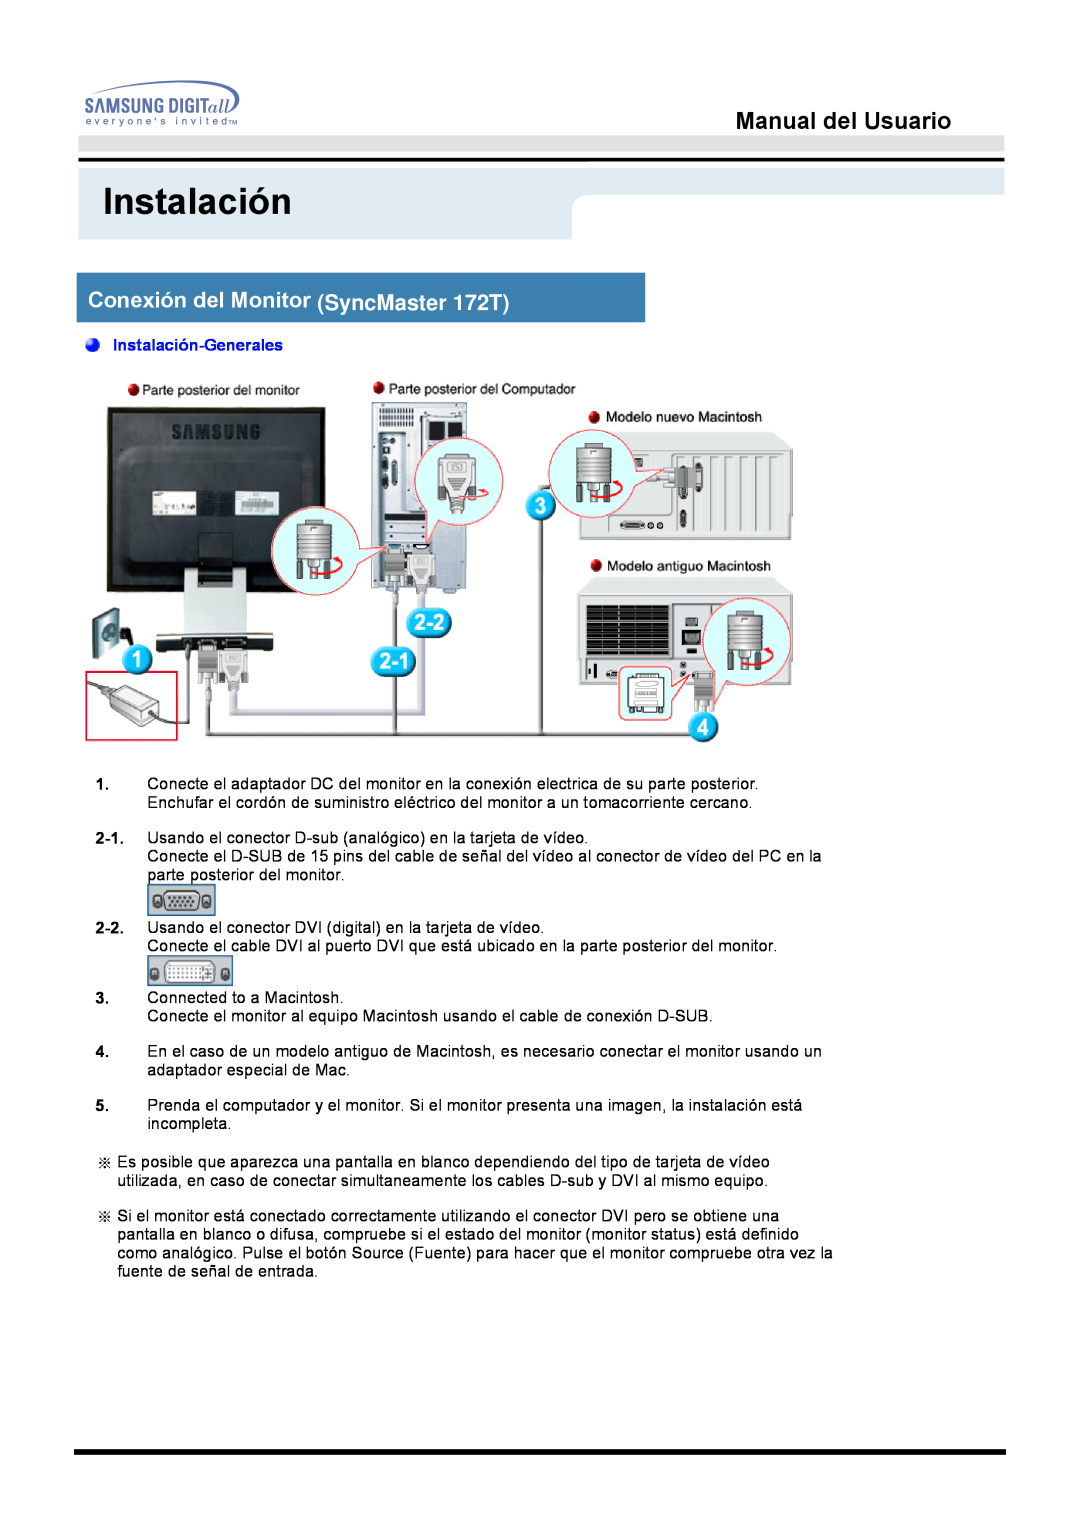 Samsung MO17ESZS/EDC, MO17ESZSZ/EDC Conexión del Monitor SyncMaster 172T, Manual del Usuario, Instalación-Generales 